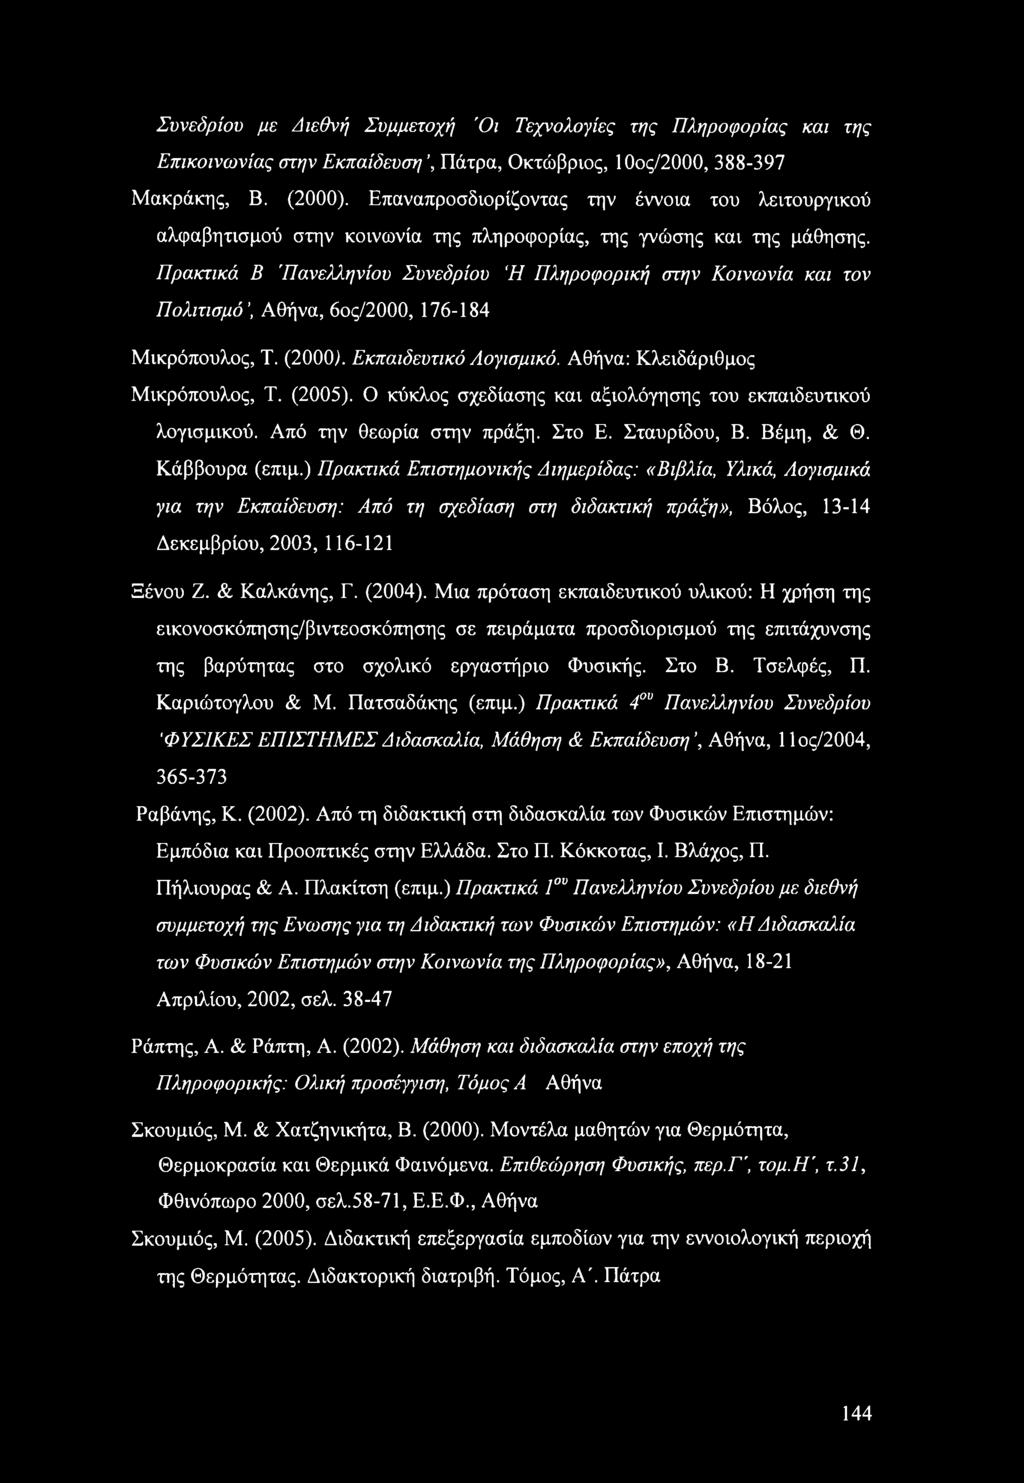 Πρακτικά Β 'Πανελληνίου Συνεδρίου Ή Πληροφορική στην Κοινωνία και τον Πολιτισμό, Αθήνα, 6ος/2000, 176-184 Μικρόπουλος, Τ. (2000). Εκπαιδευτικό Λογισμικό. Αθήνα: Κλειδάριθμος Μικρόπουλος, Τ. (2005).